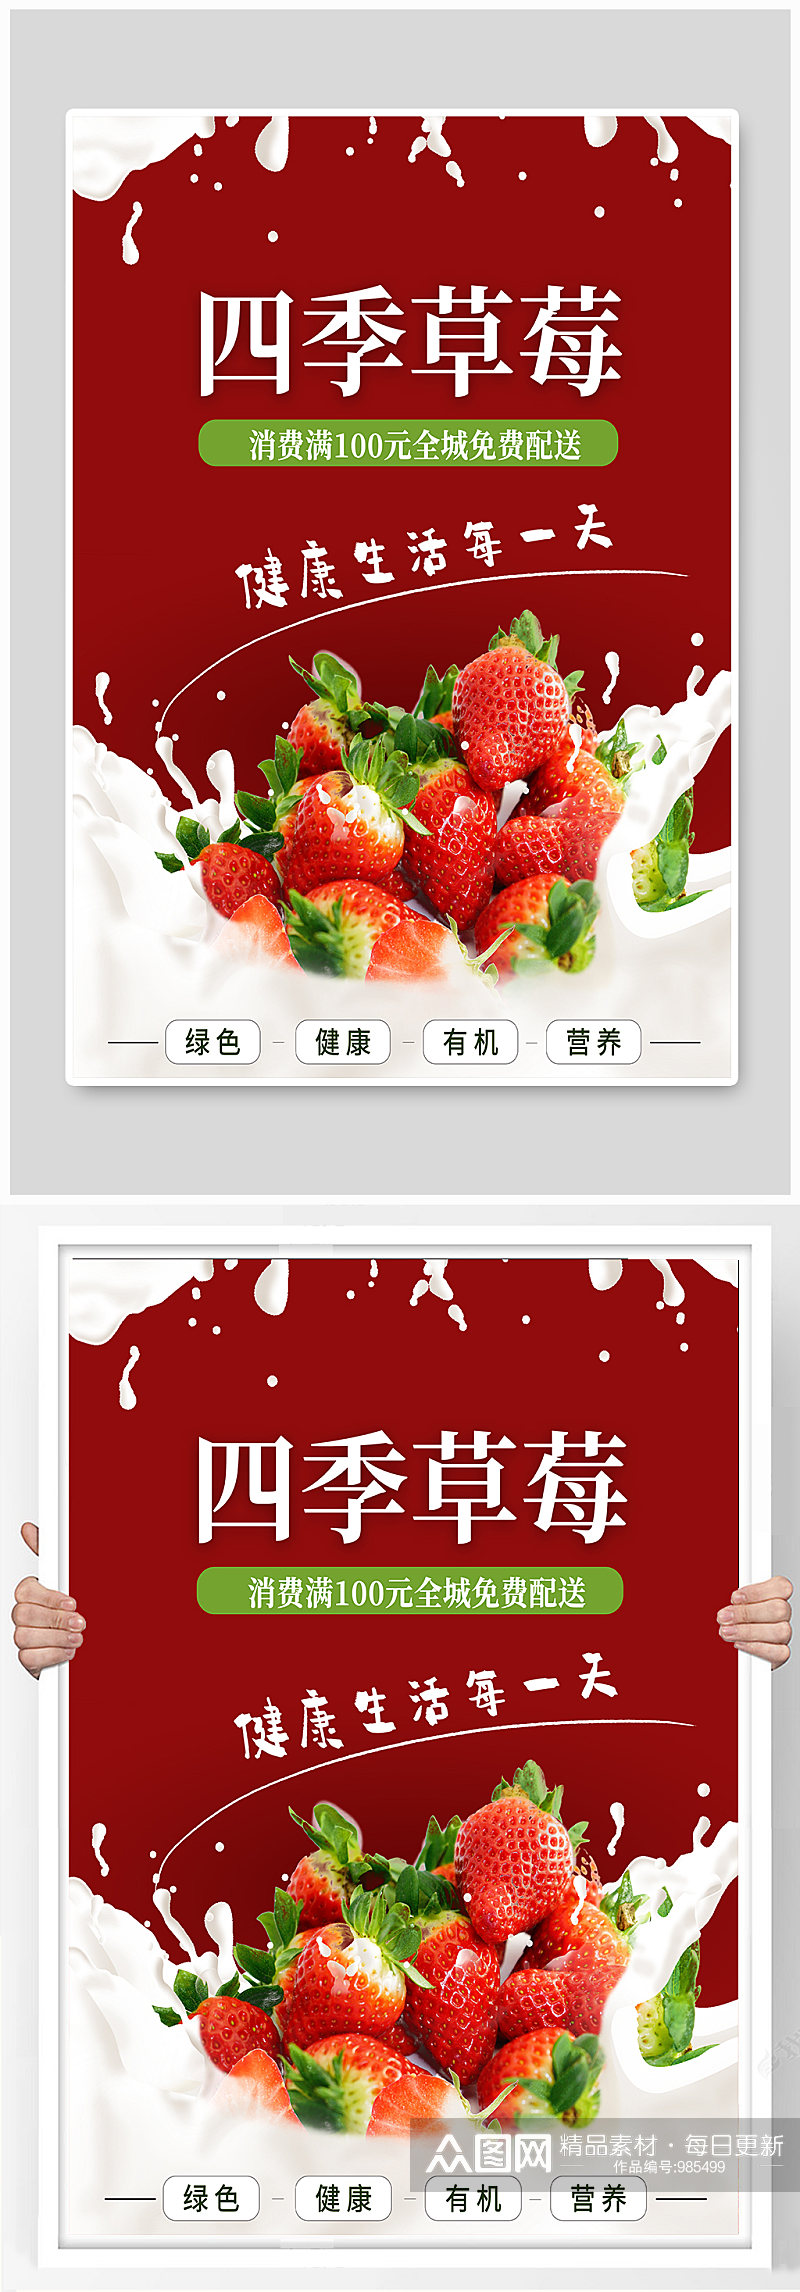 四季草莓水果店宣传海报素材